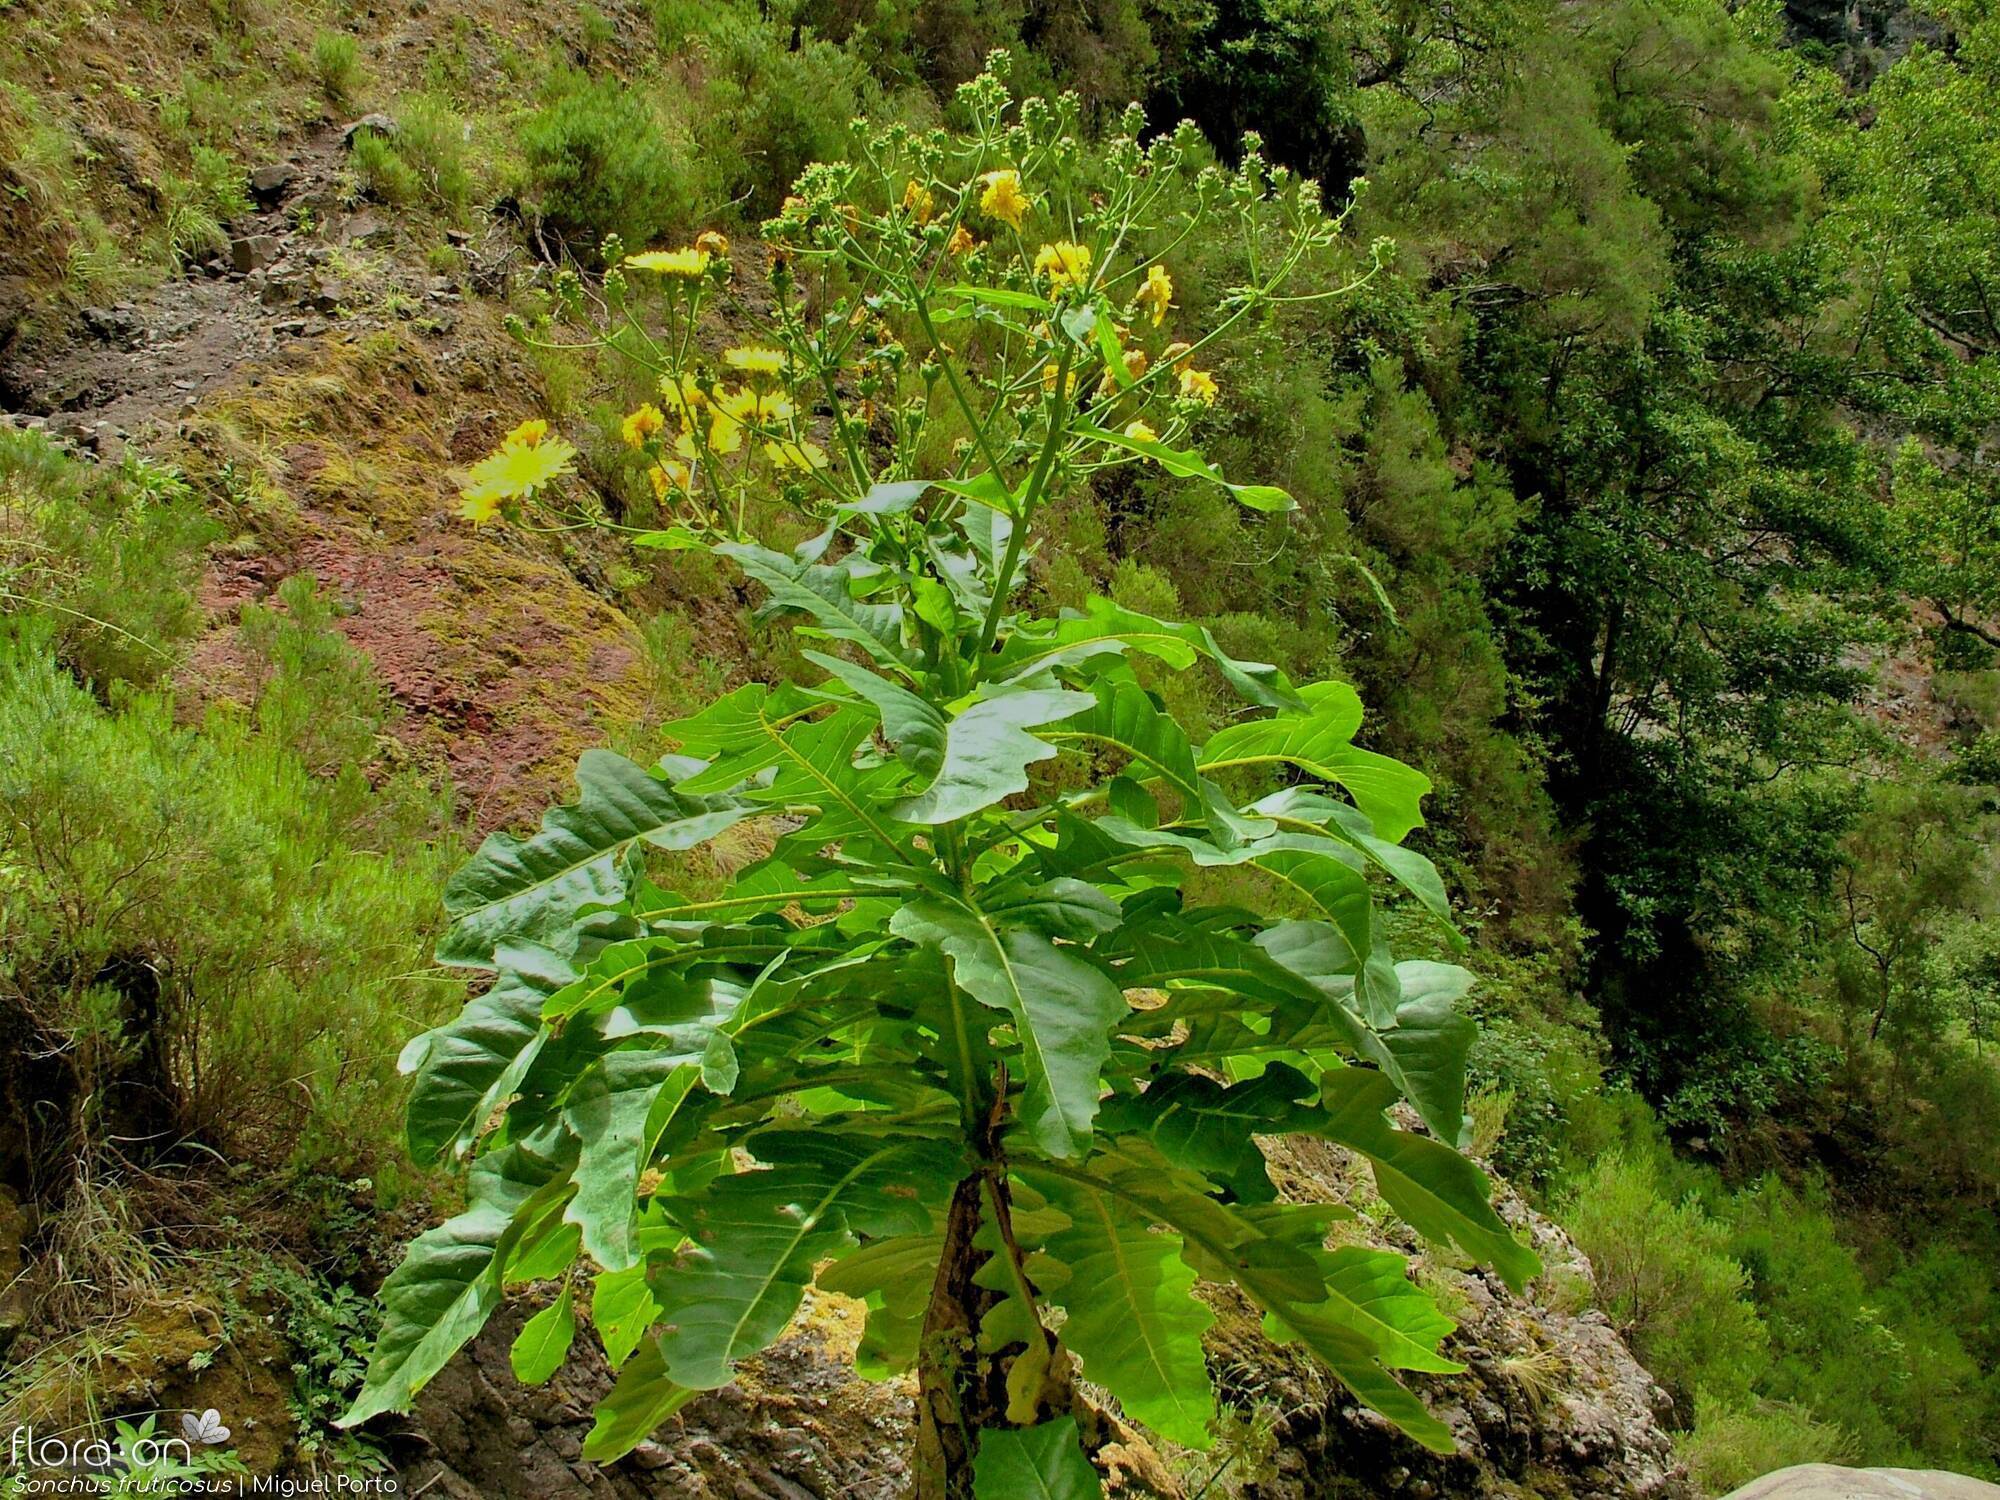 Sonchus fruticosus - Flor (geral) | Miguel Porto; CC BY-NC 4.0